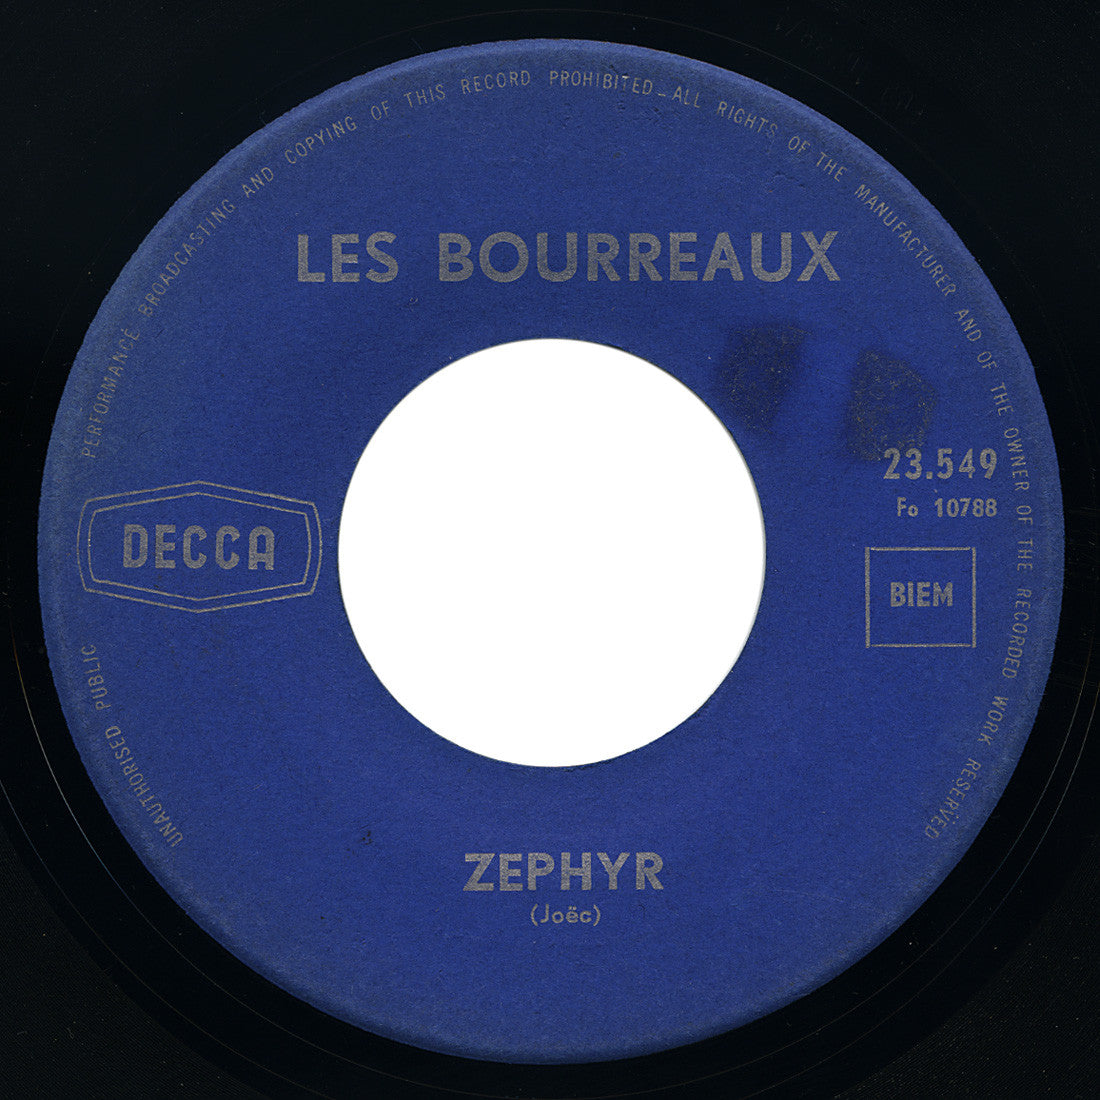 Les Bourreaux – Zephyr – Decca